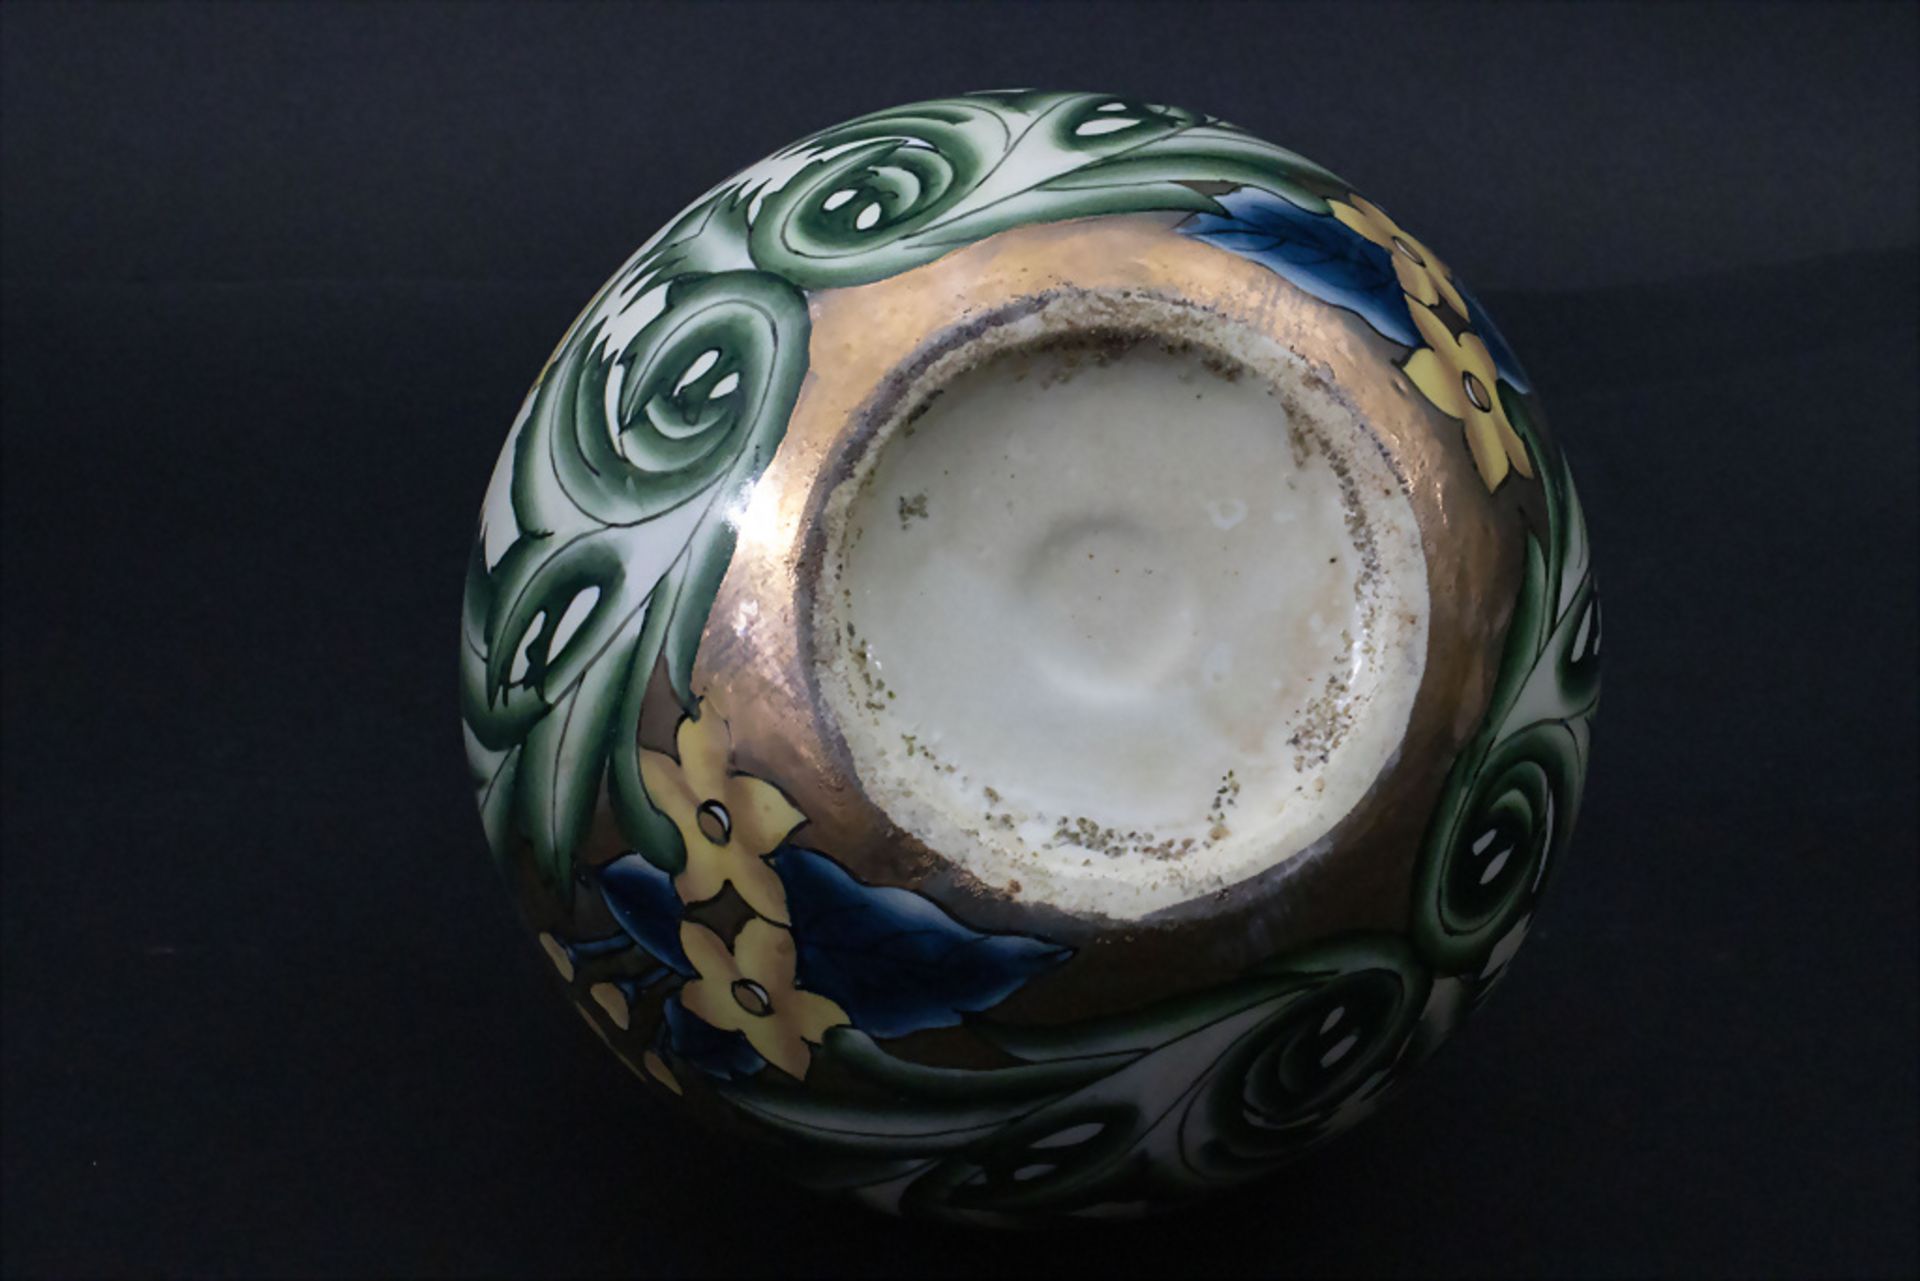 Porzellan Ziervase / A decorative porcelain vase, G. Fieravino, Italien, 20. Jh. - Bild 5 aus 5